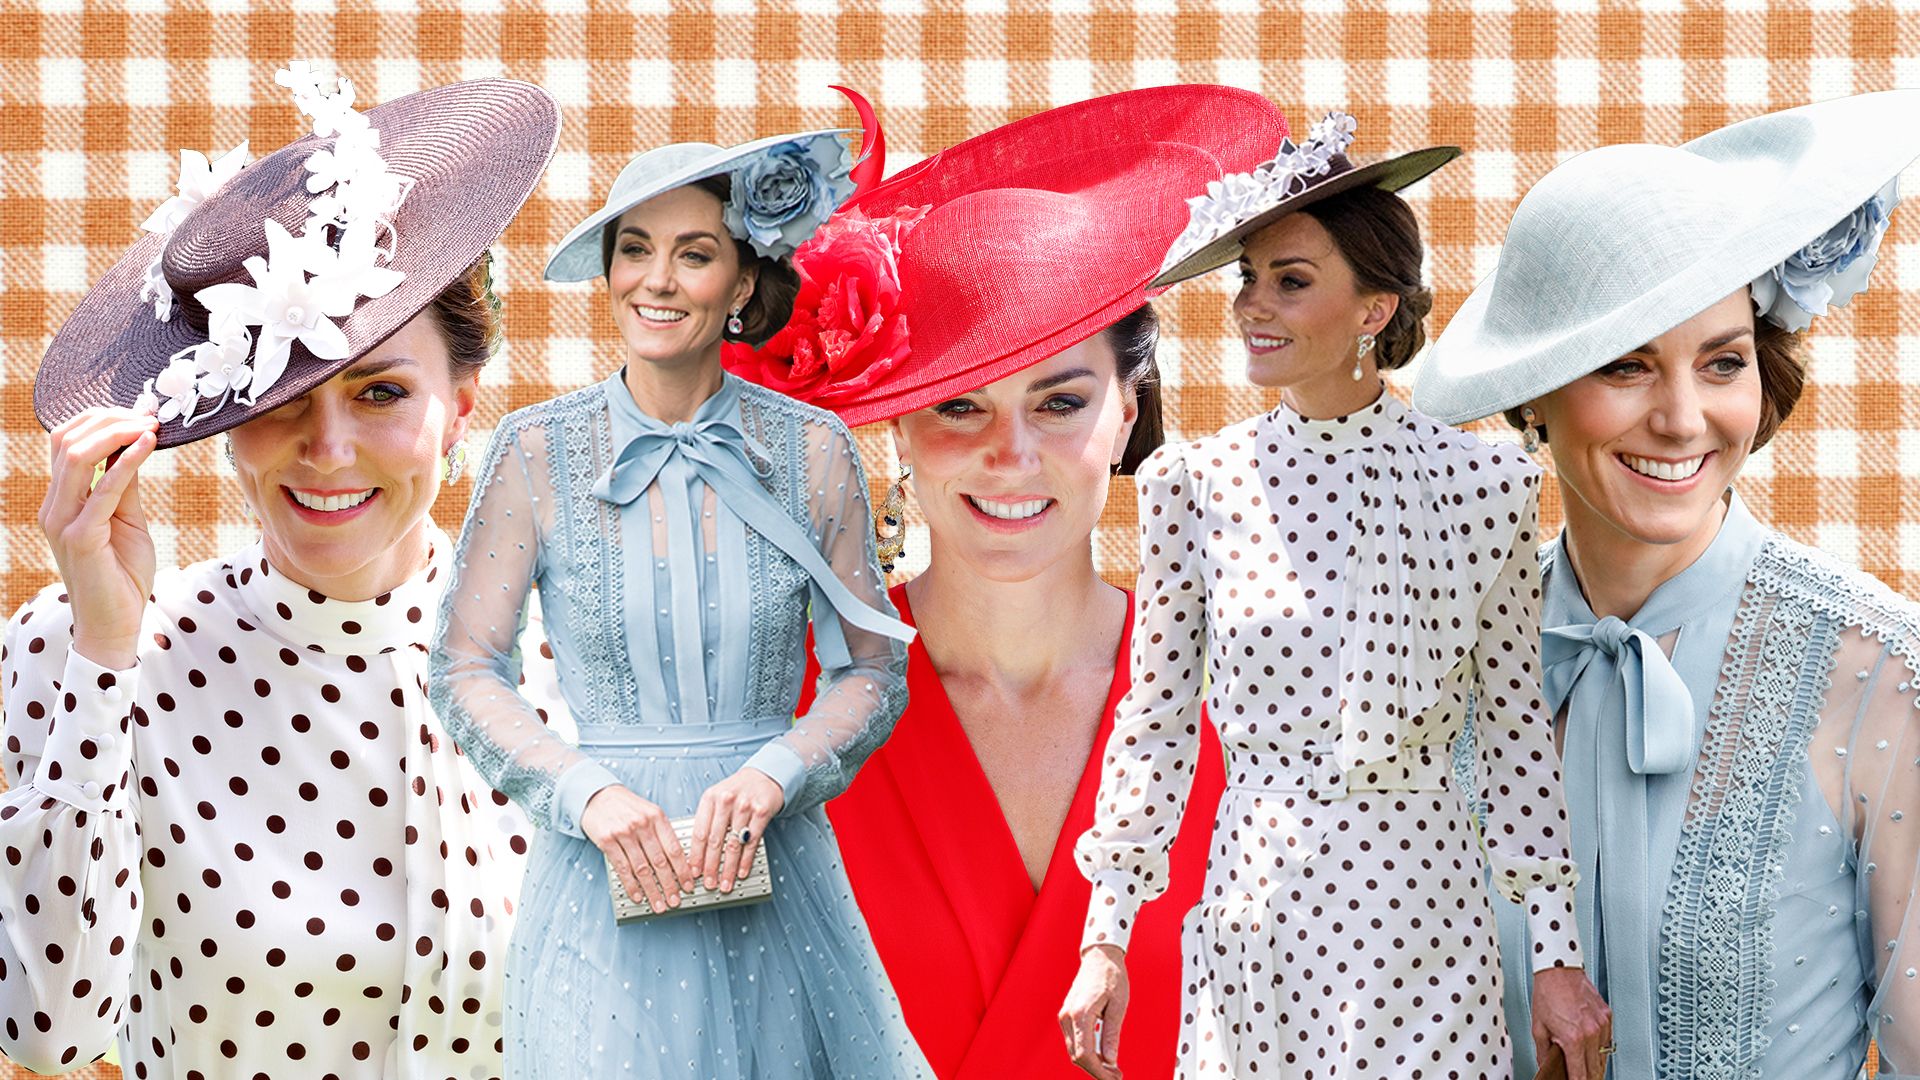 Kate Middleton's best royal ascot looks